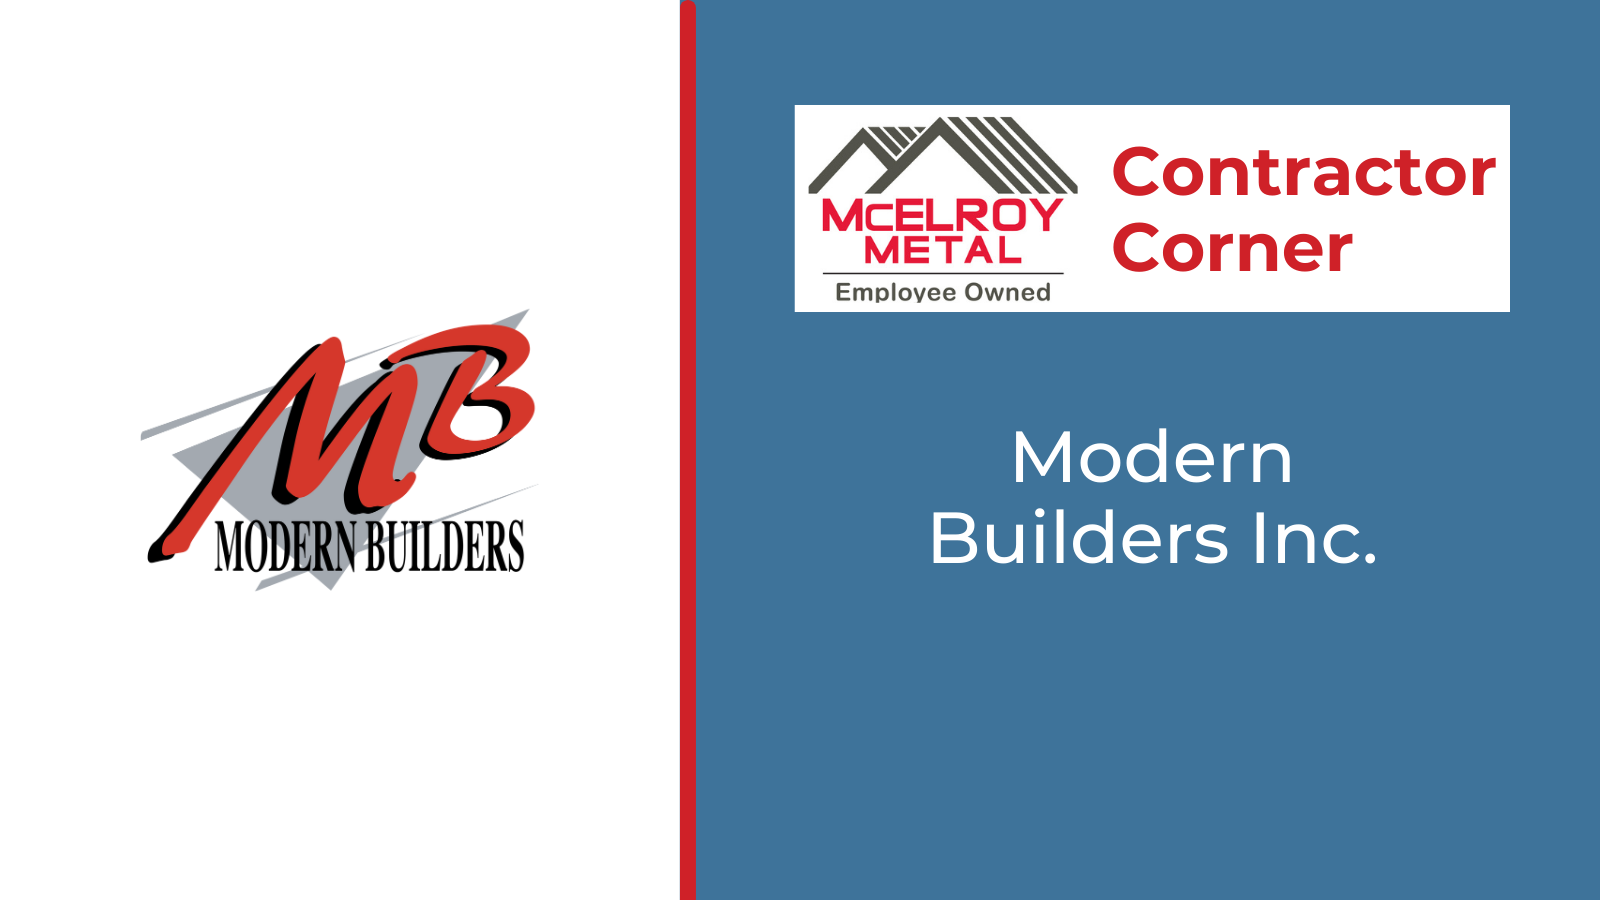 Contractor Corner - Modern Builders Inc.